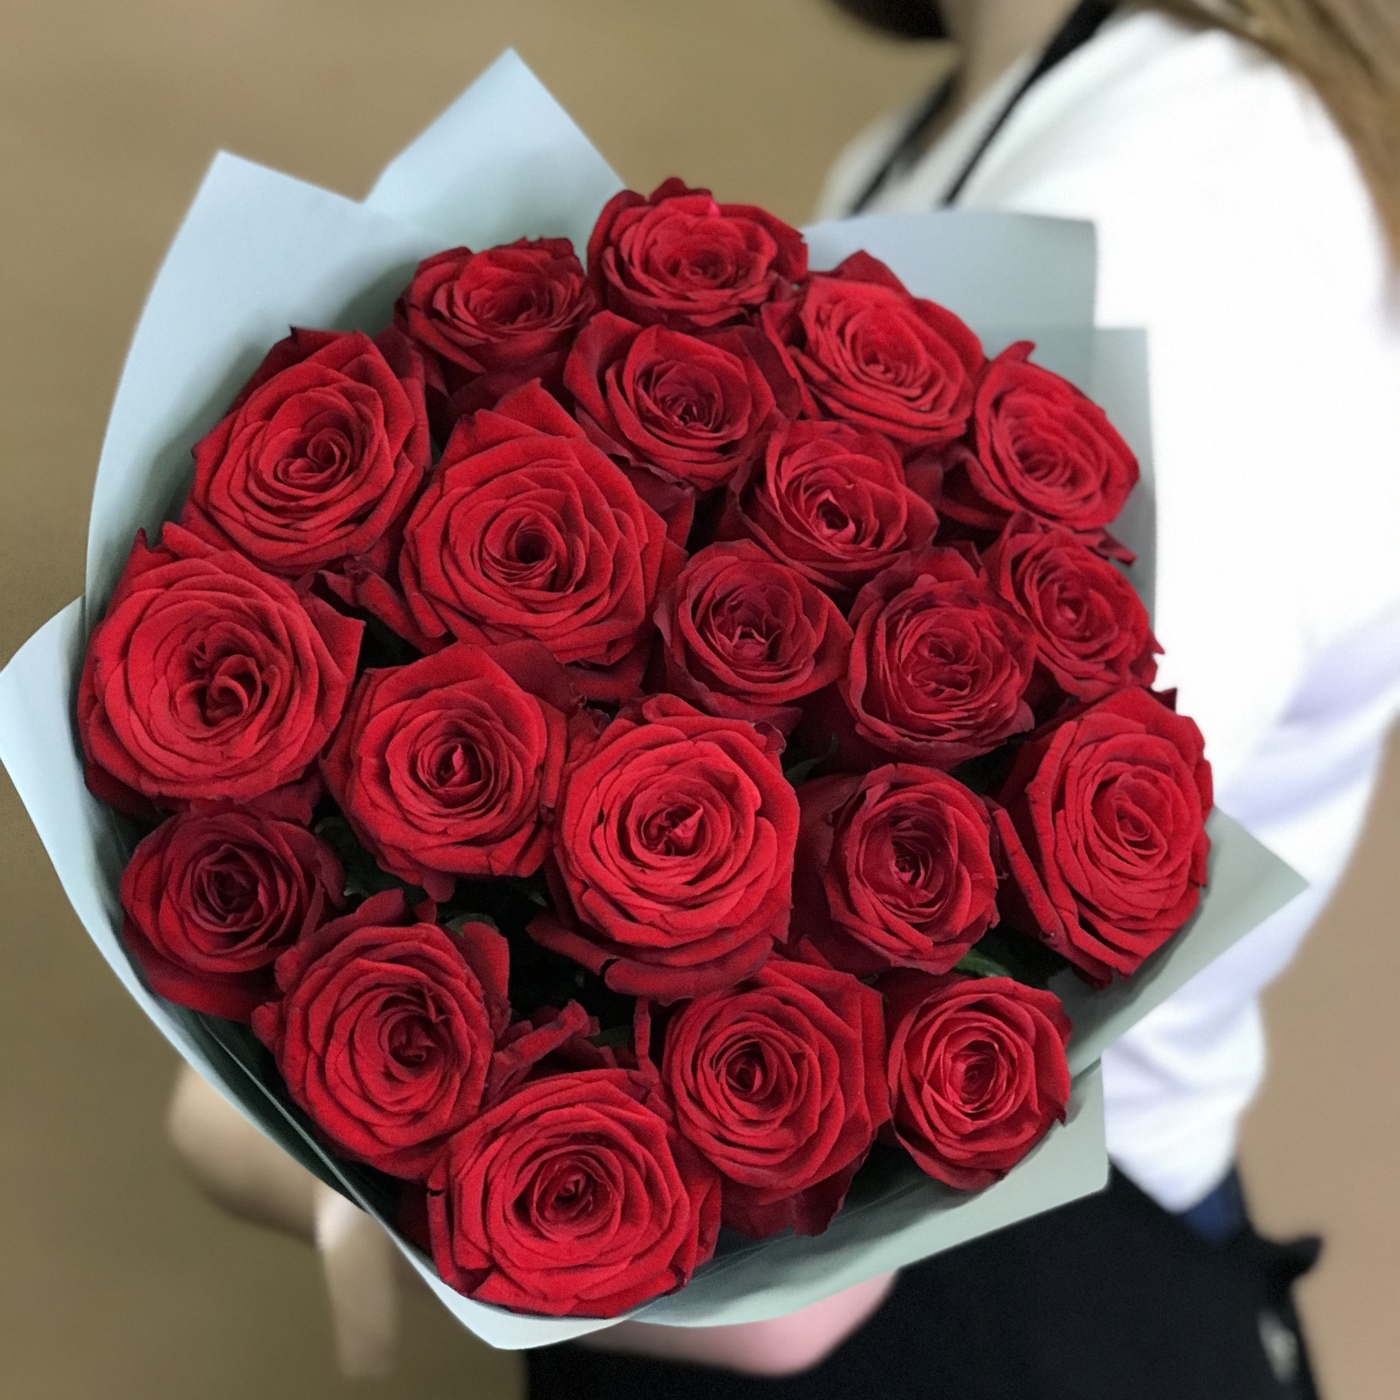 Роза 50 см цена за штуку какое количество роз можно дарить девушке